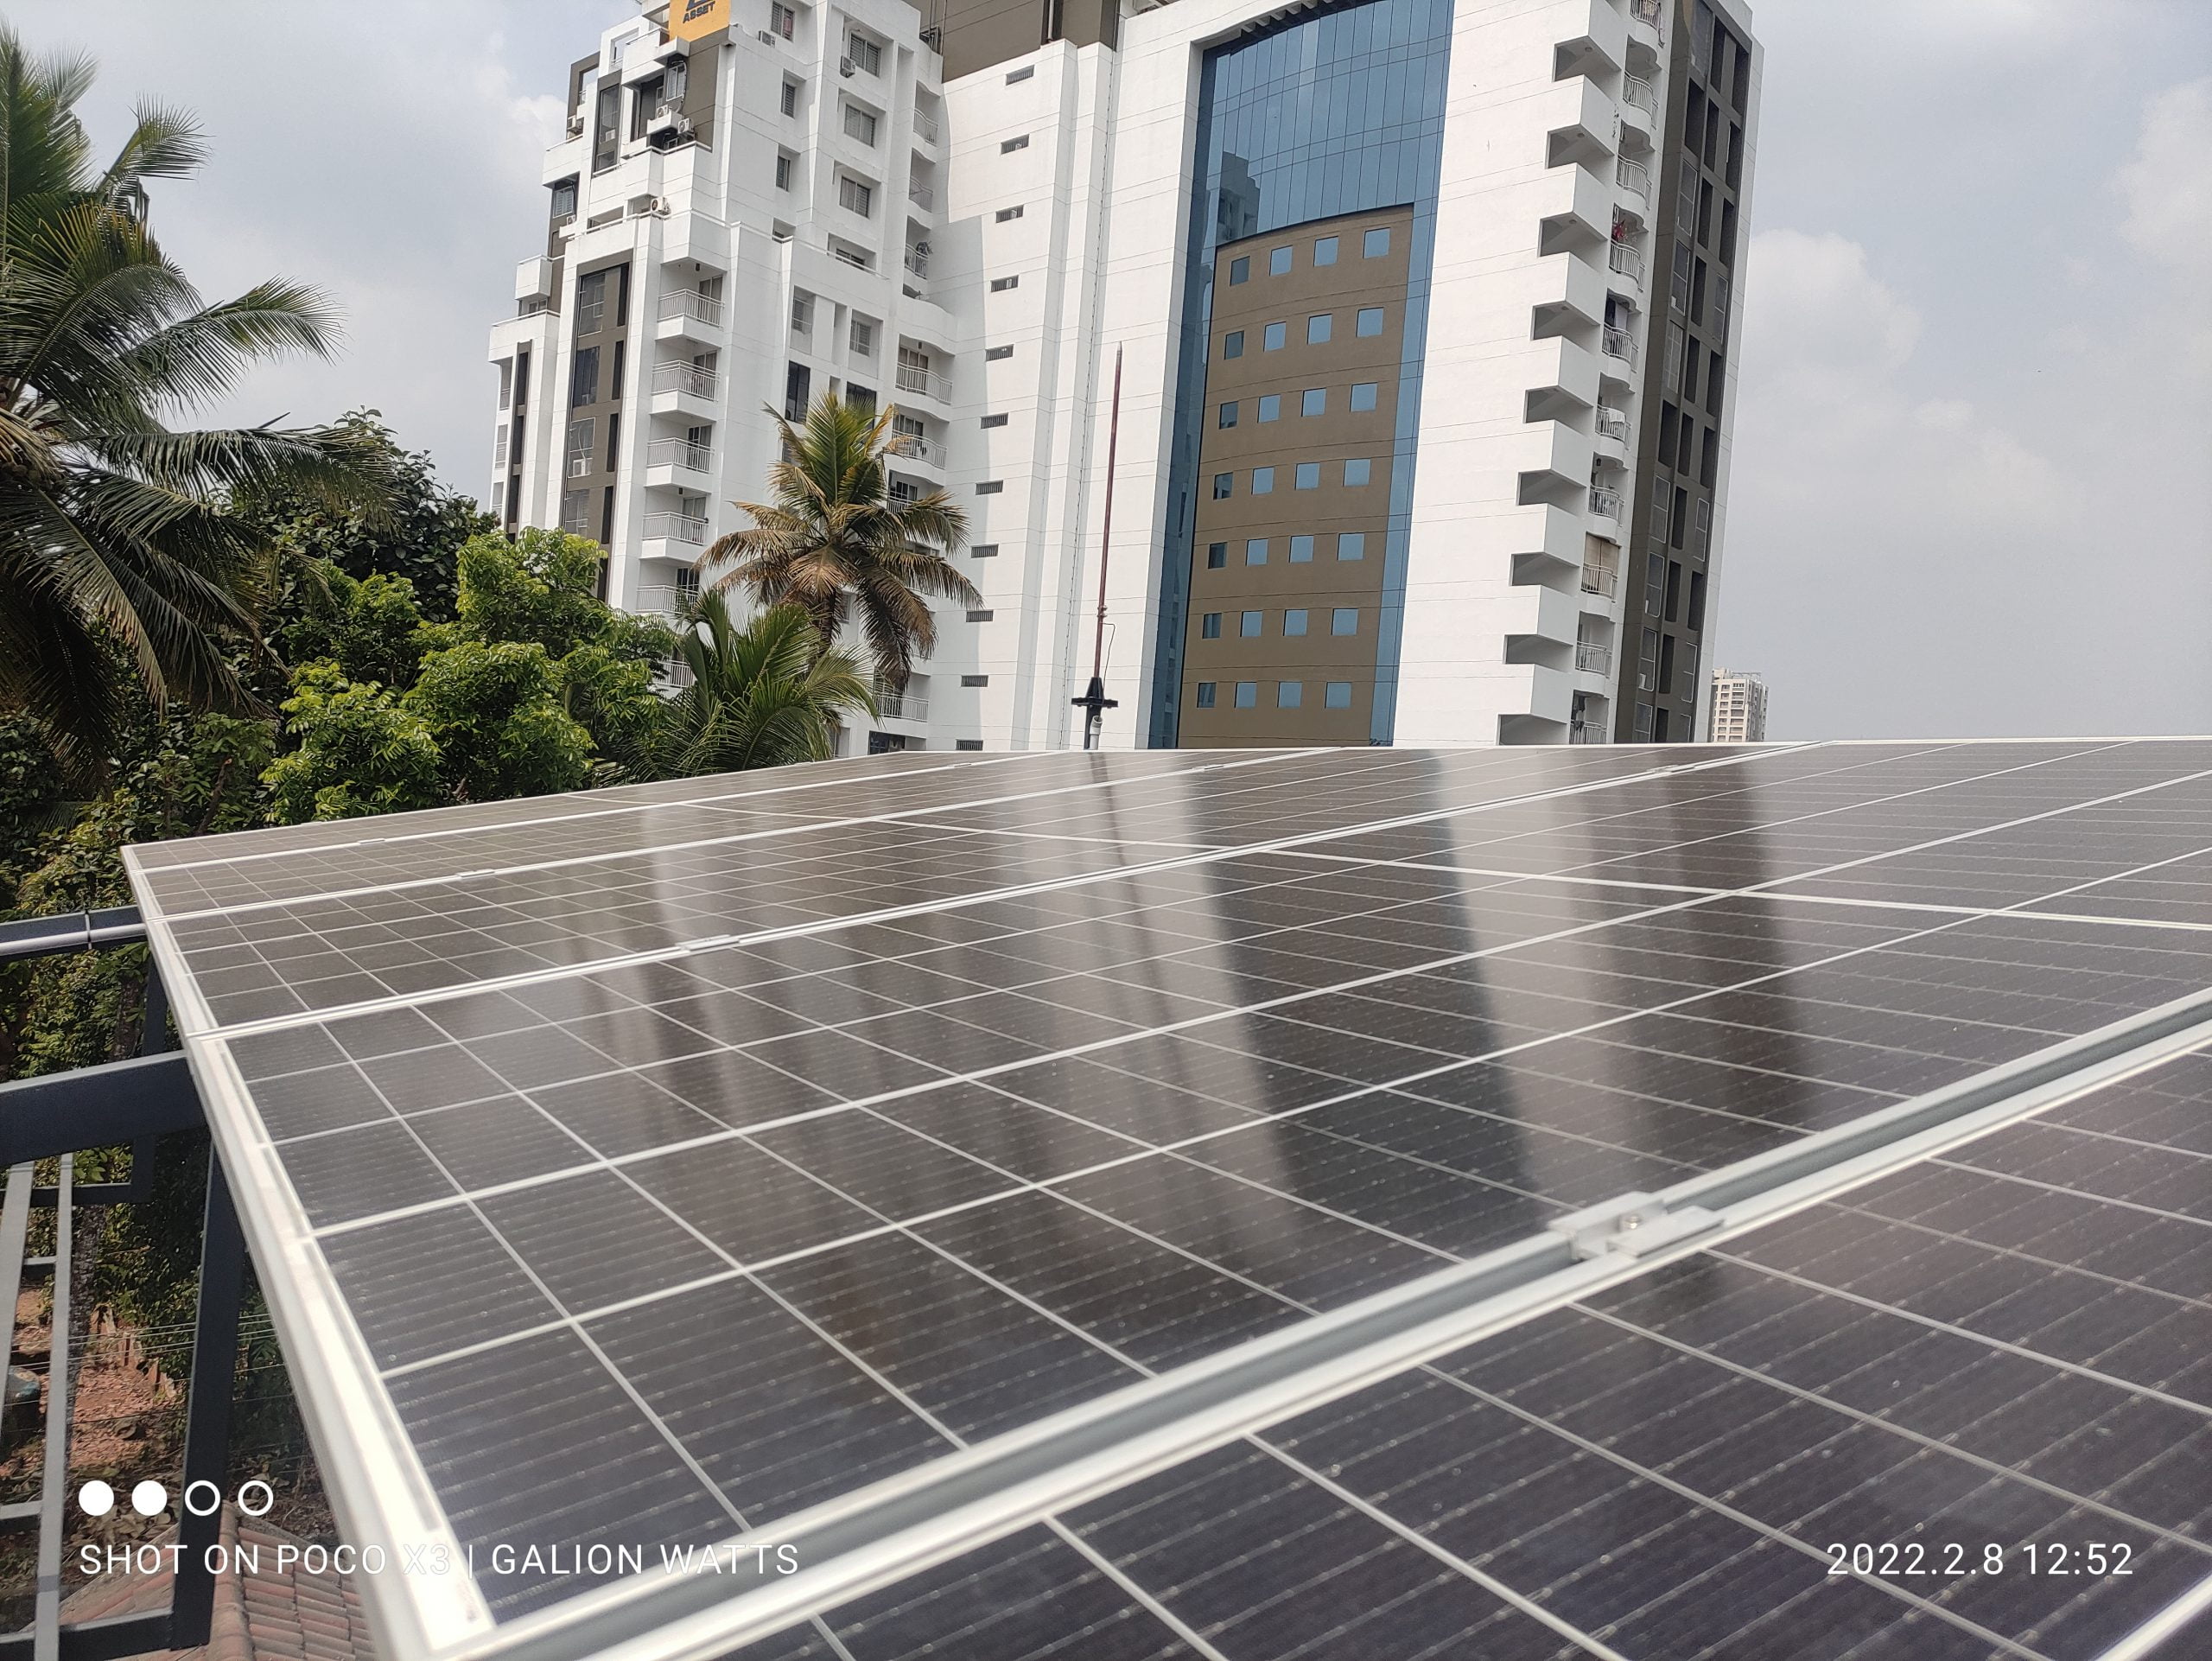 solar ongrid power plant in Kottayam